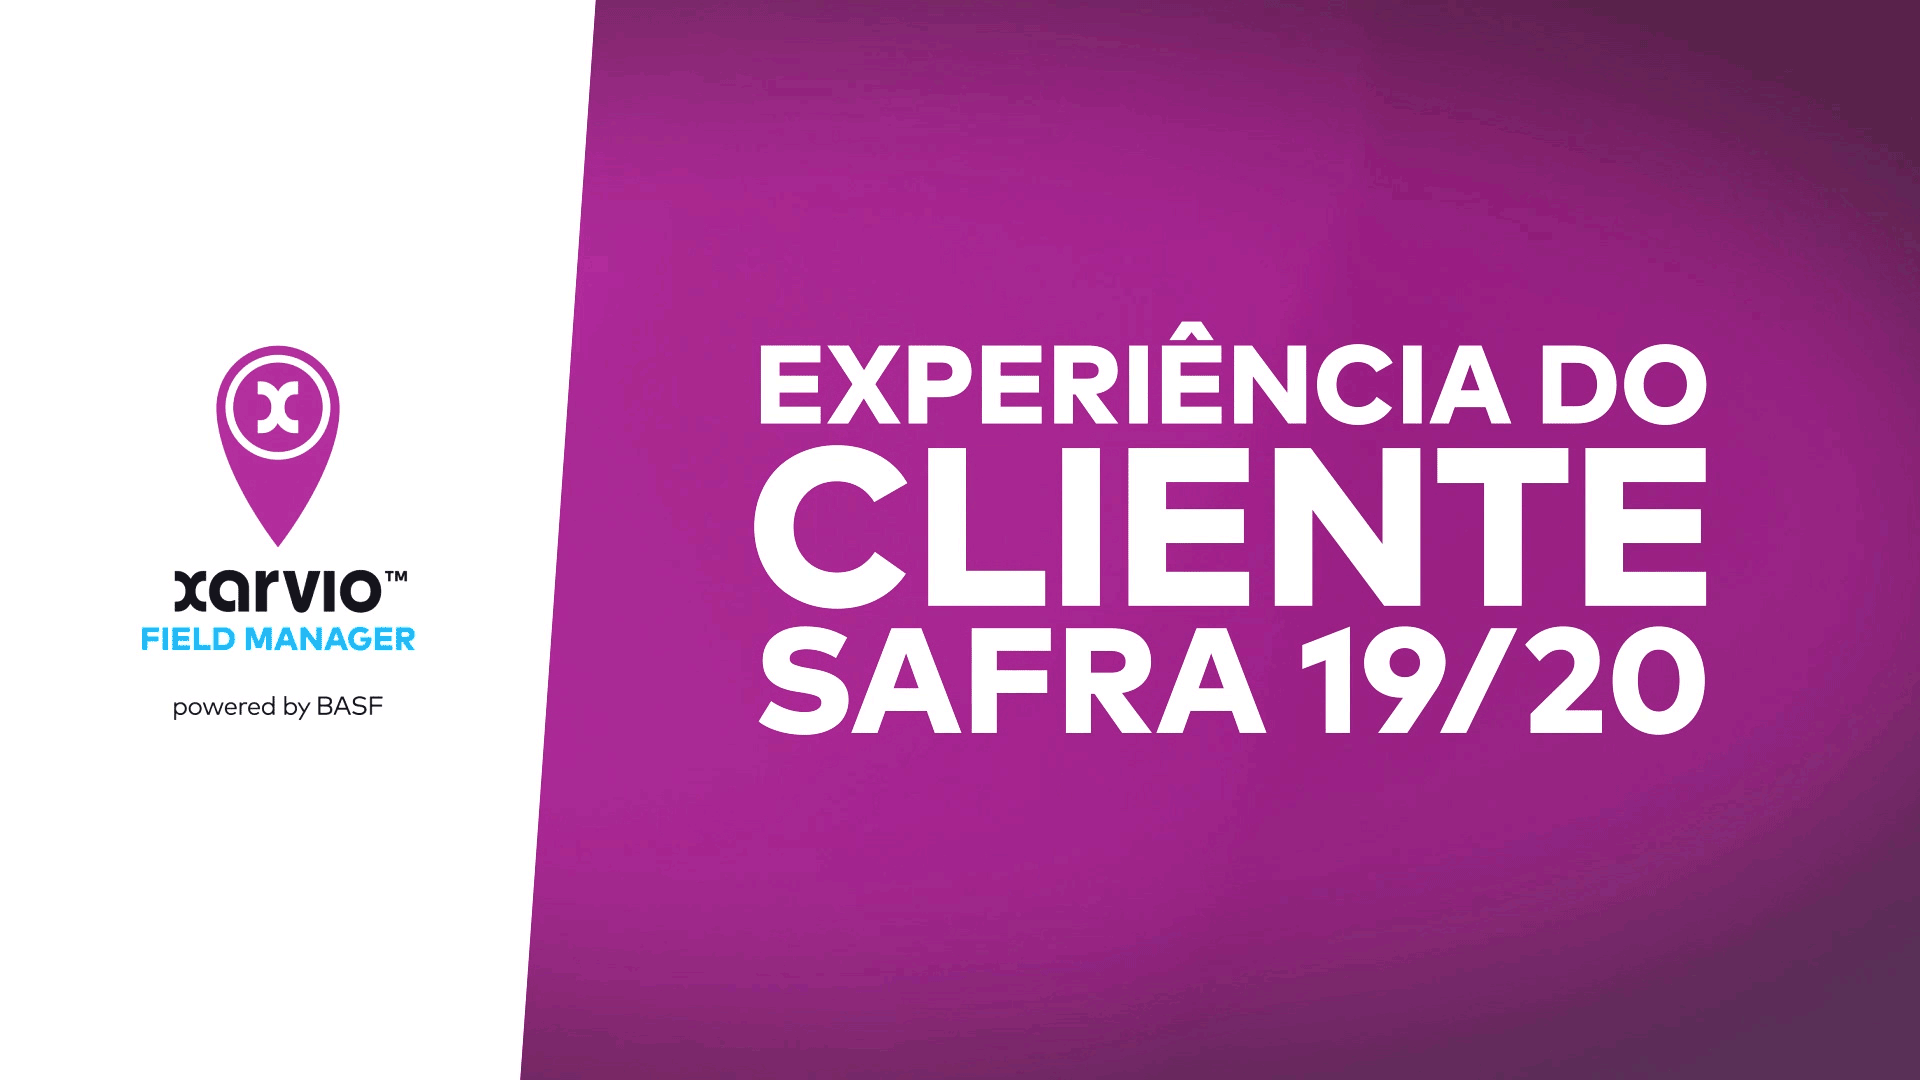 xarvio FIELD MANAGER - Experiência do Cliente Safra 19/20